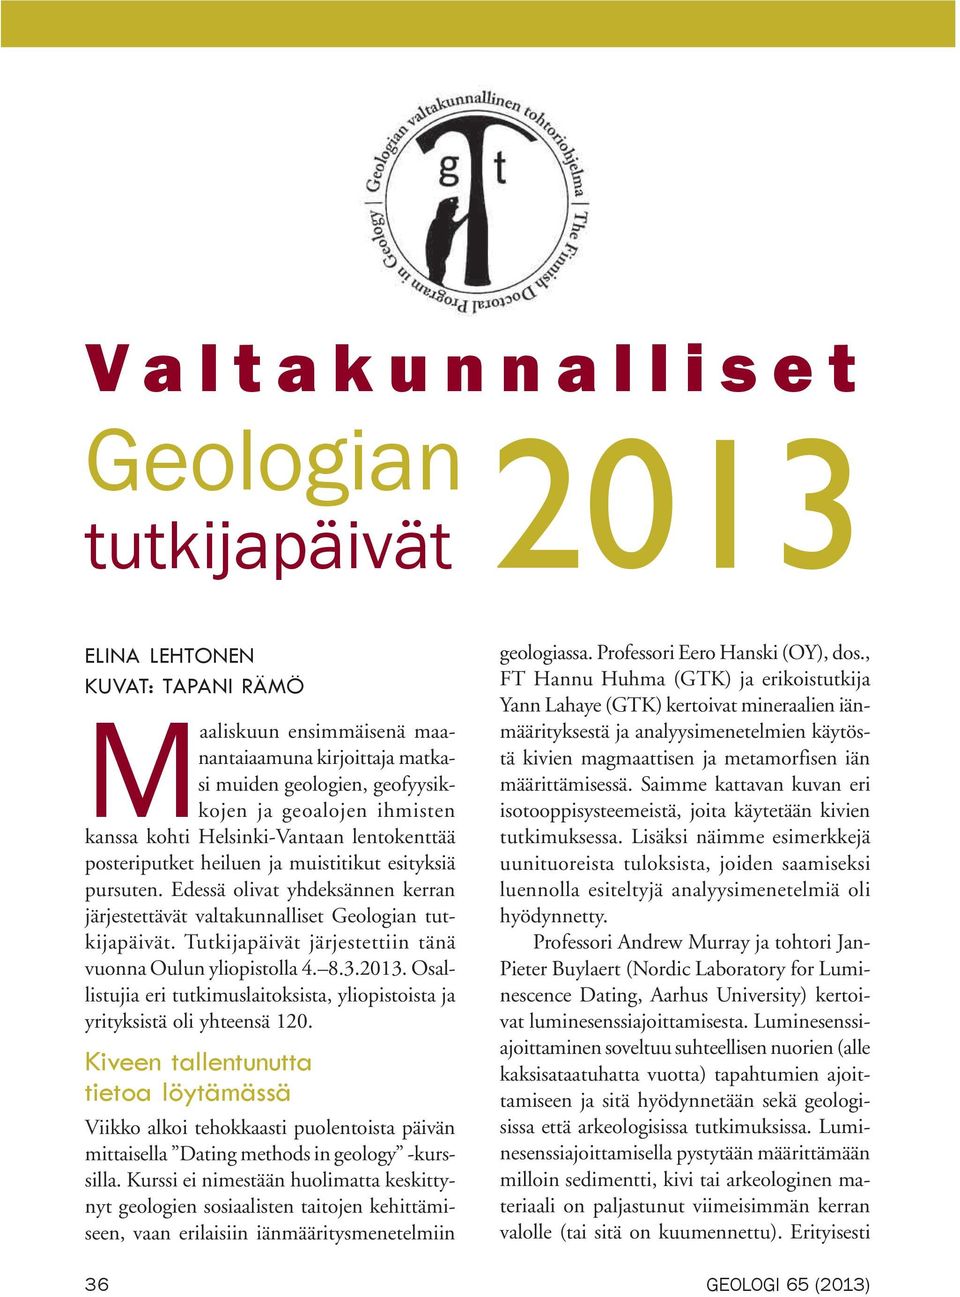 Tutkijapäivät järjestettiin tänä vuonna Oulun yliopistolla 4. 8.3.2013. Osallistujia eri tutkimuslaitoksista, yliopistoista ja yrityksistä oli yhteensä 120.